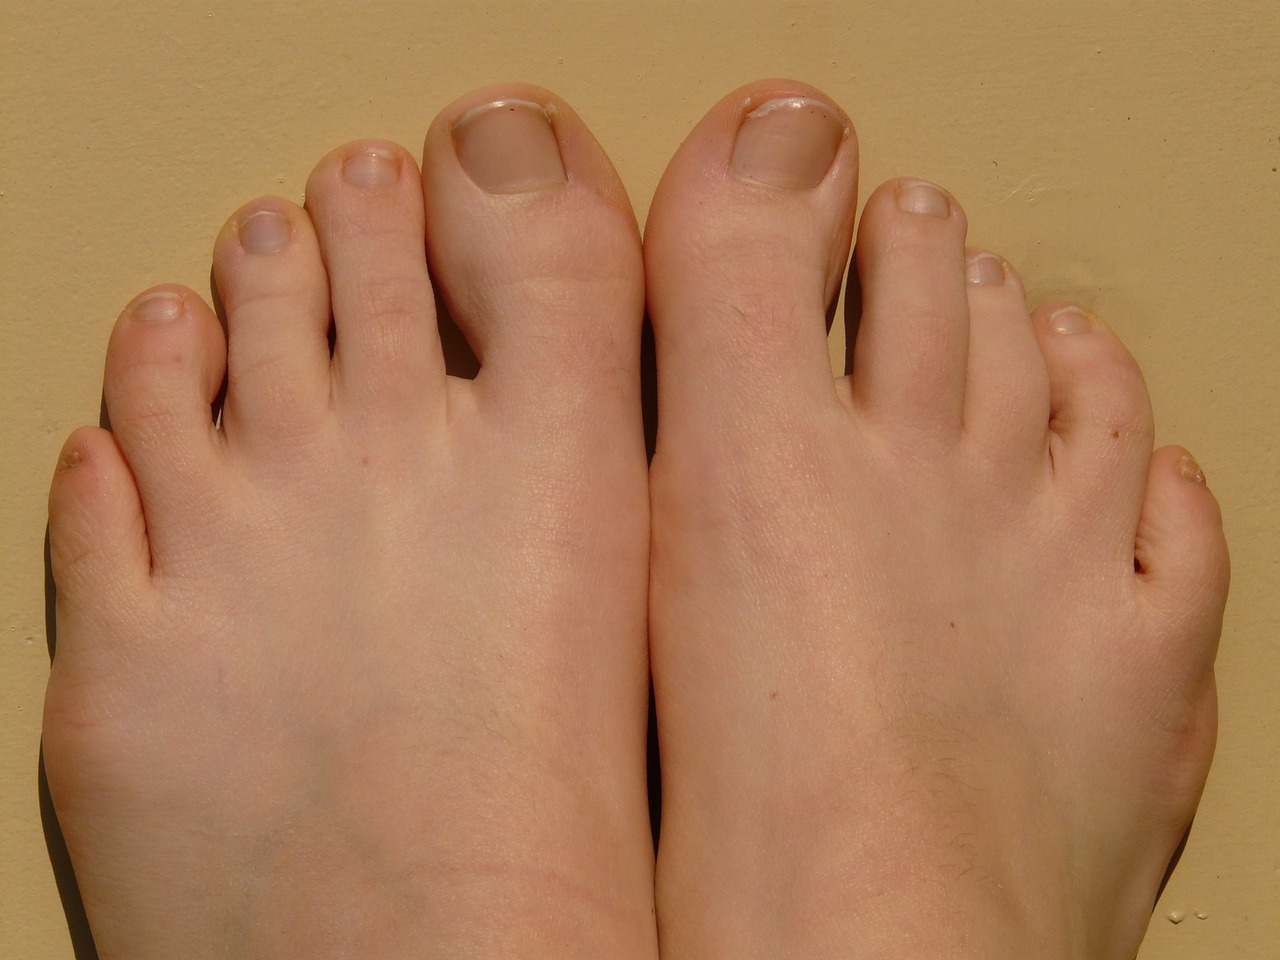 A pair of feet